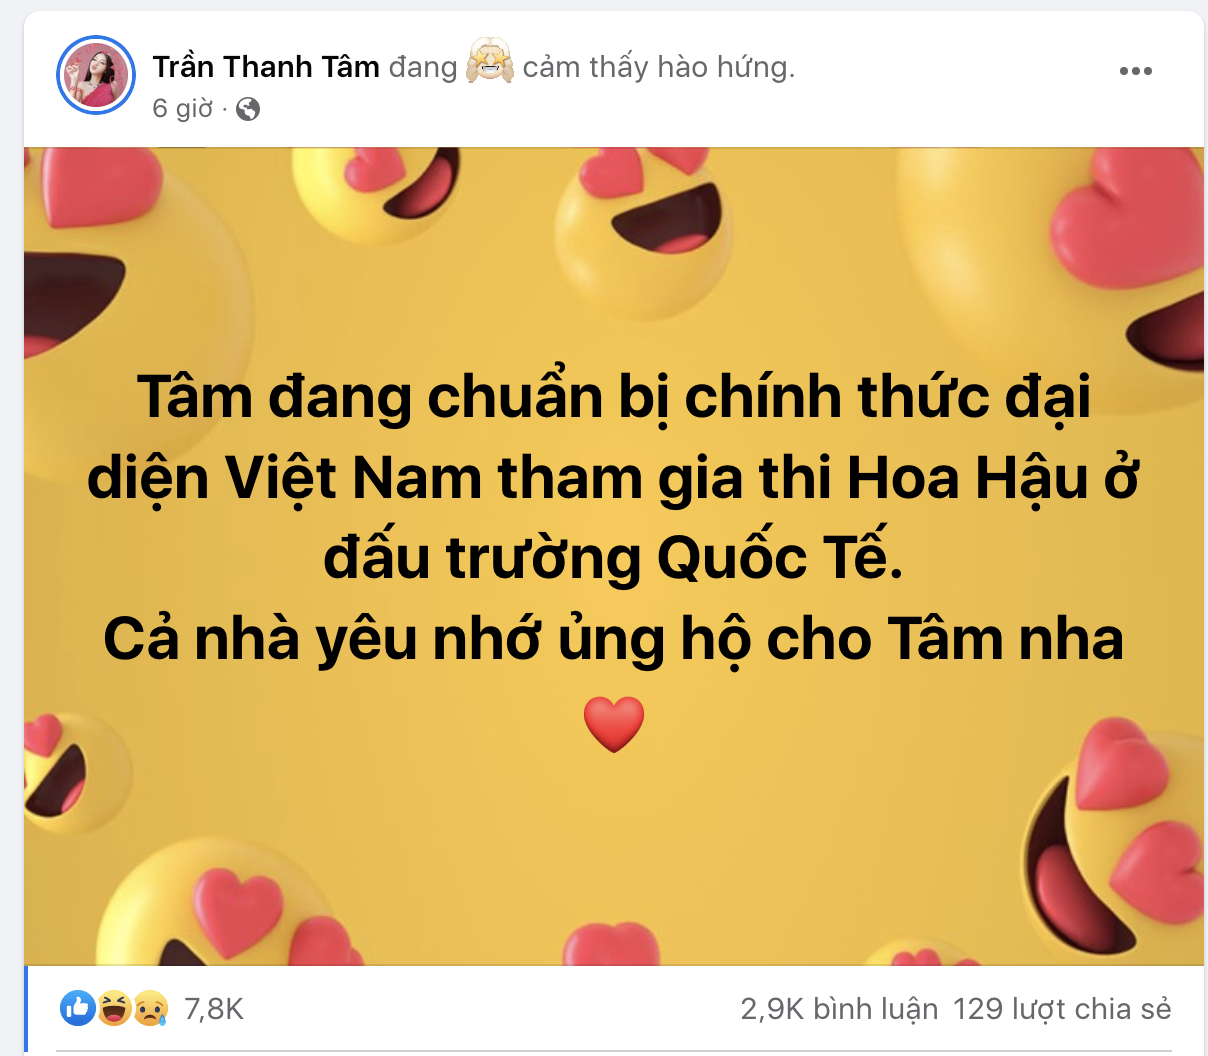 Trần Thanh Tâm thông báo về việc cô sẽ tham gia thi Hoa hâu ở đấu trường Quốc tế